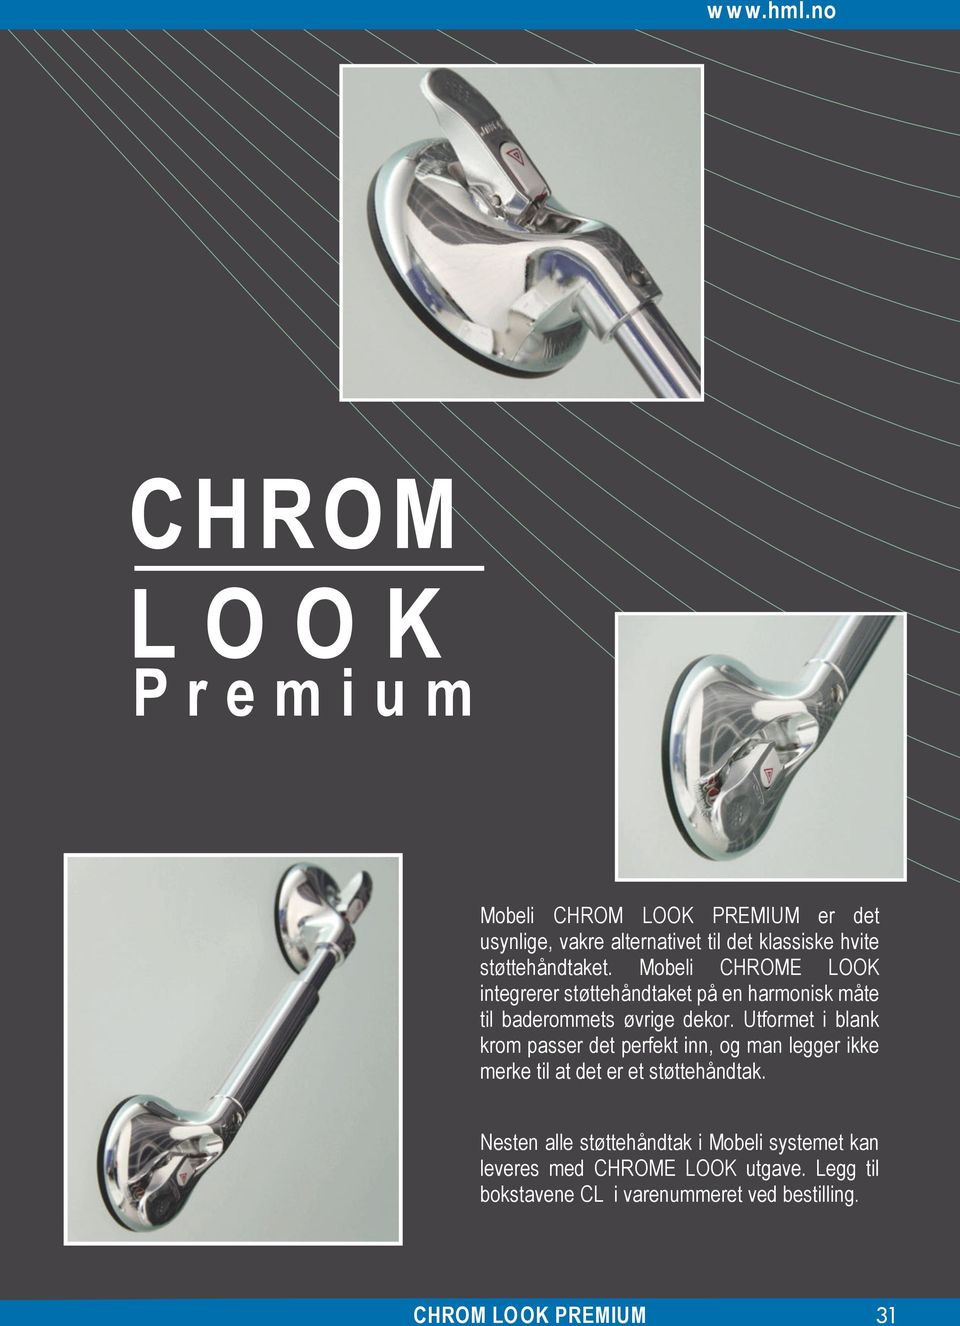 støttehåndtaket. Mobeli CHROME LOOK integrerer støttehåndtaket på en harmonisk måte til baderommets øvrige dekor.